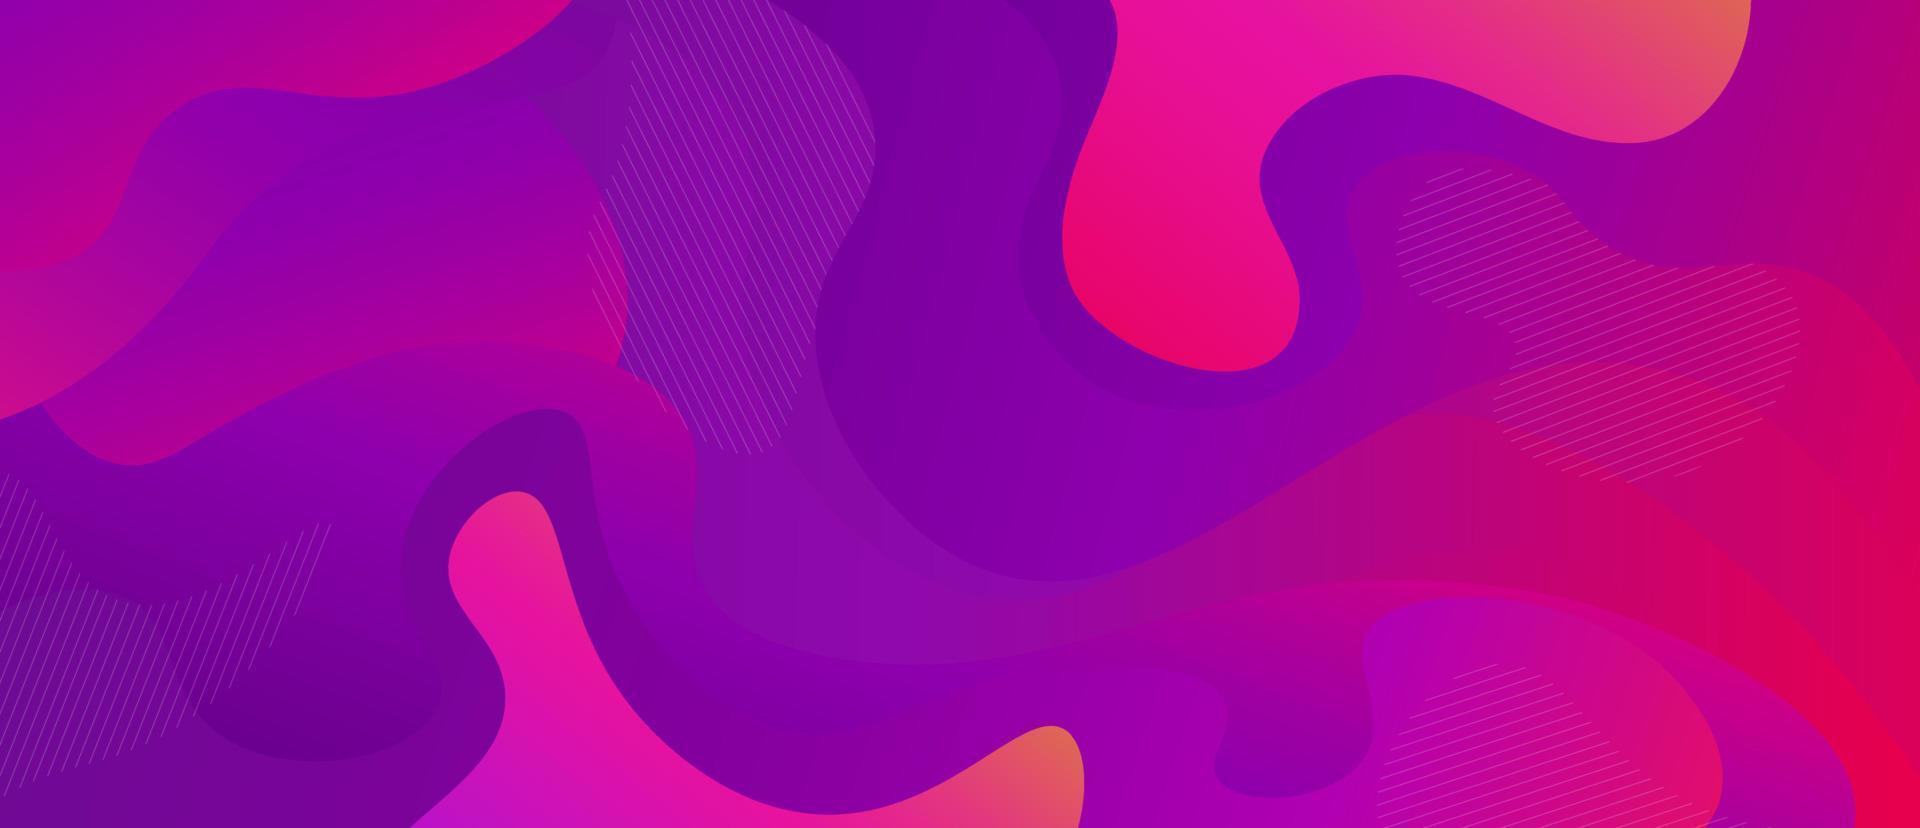 Ilustración plana de vector de fondo líquido púrpura y rosa futurista de color. fondo de flujo de fluido dinámico brillante curva superficie creativa moderna con línea decorativa gráfica